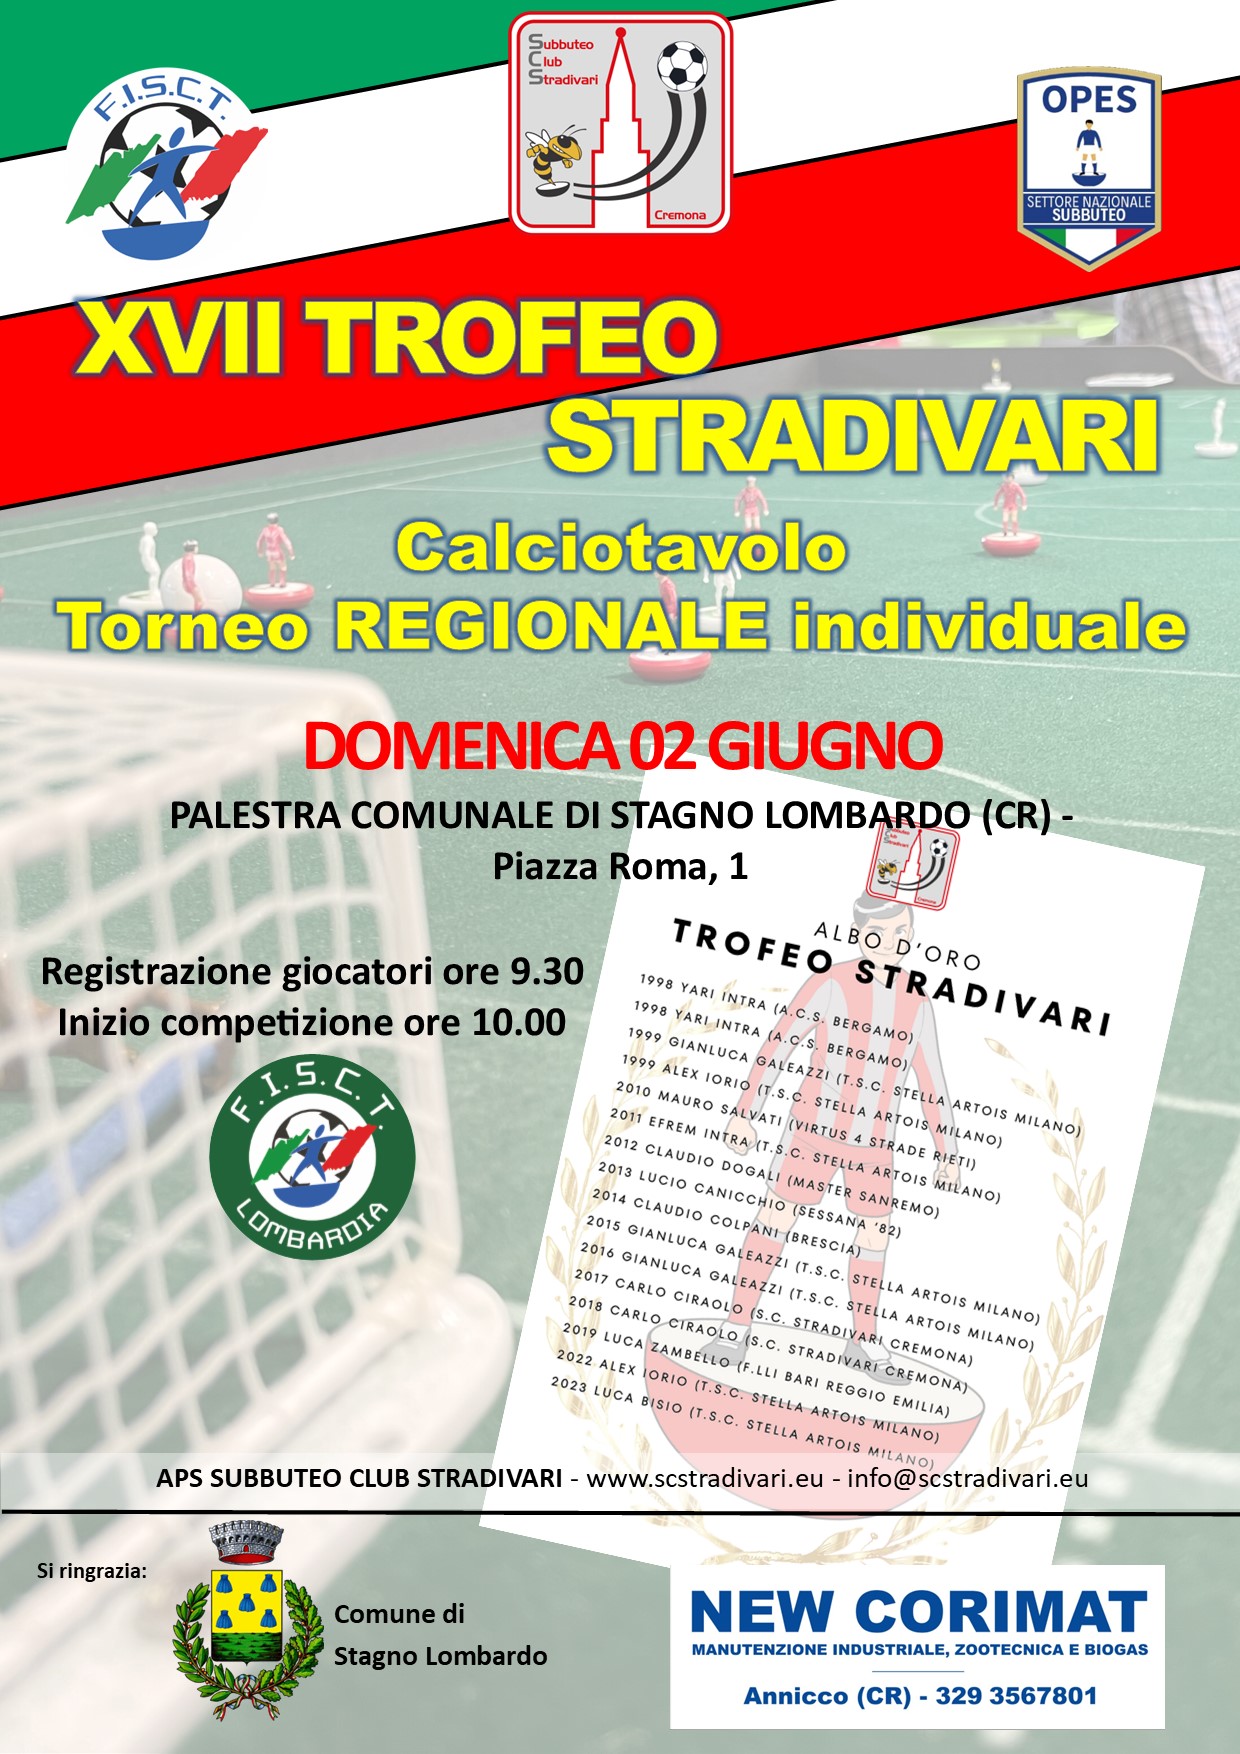 Trofeo Stradivari di subbuteo calciotavolo